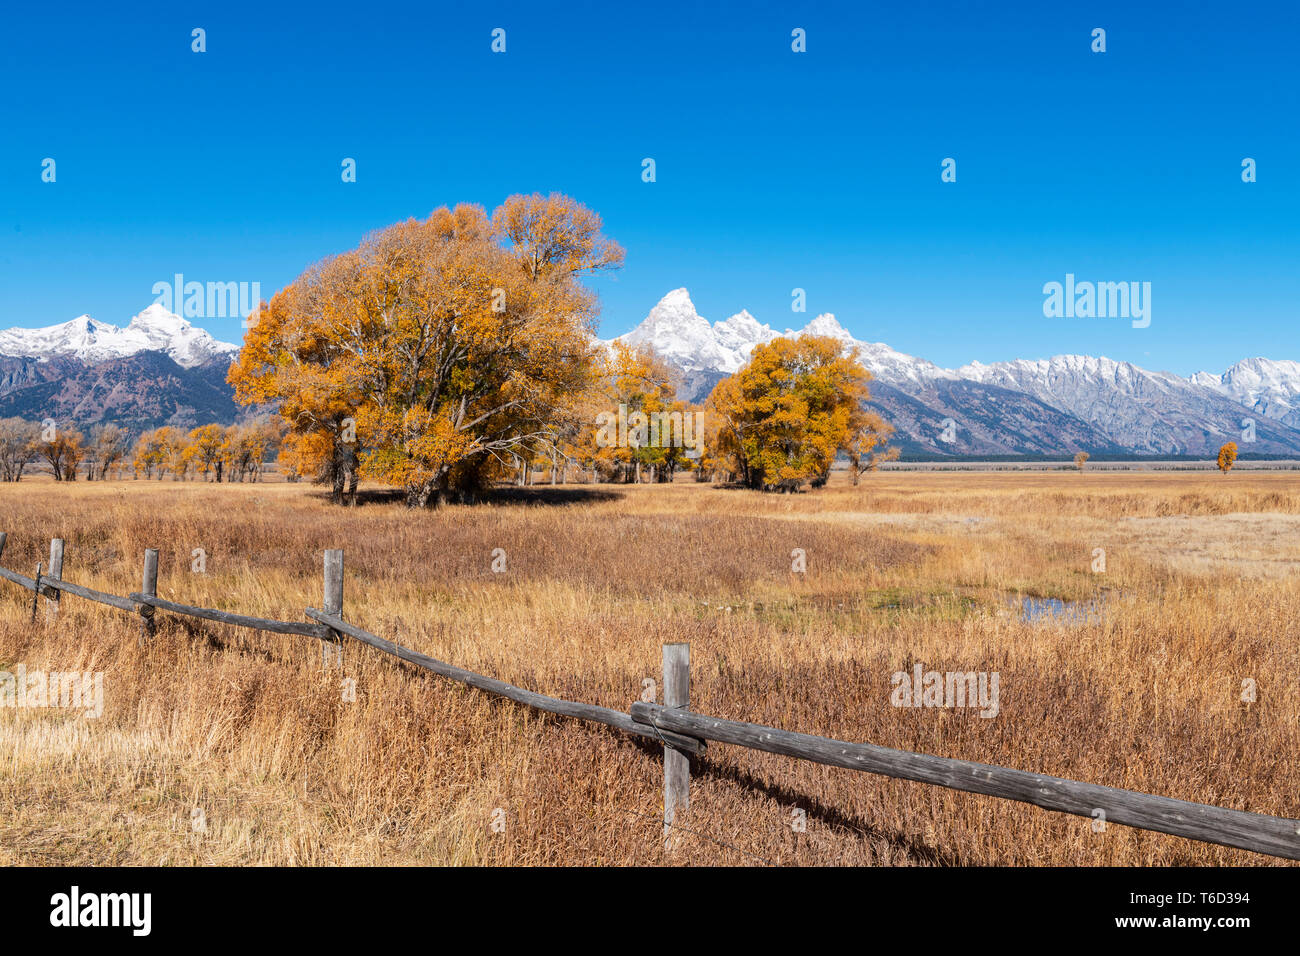 John Moulton granero histórico, mormona Fila, parque nacional Grand Teton, Wyoming, EE.UU. Foto de stock